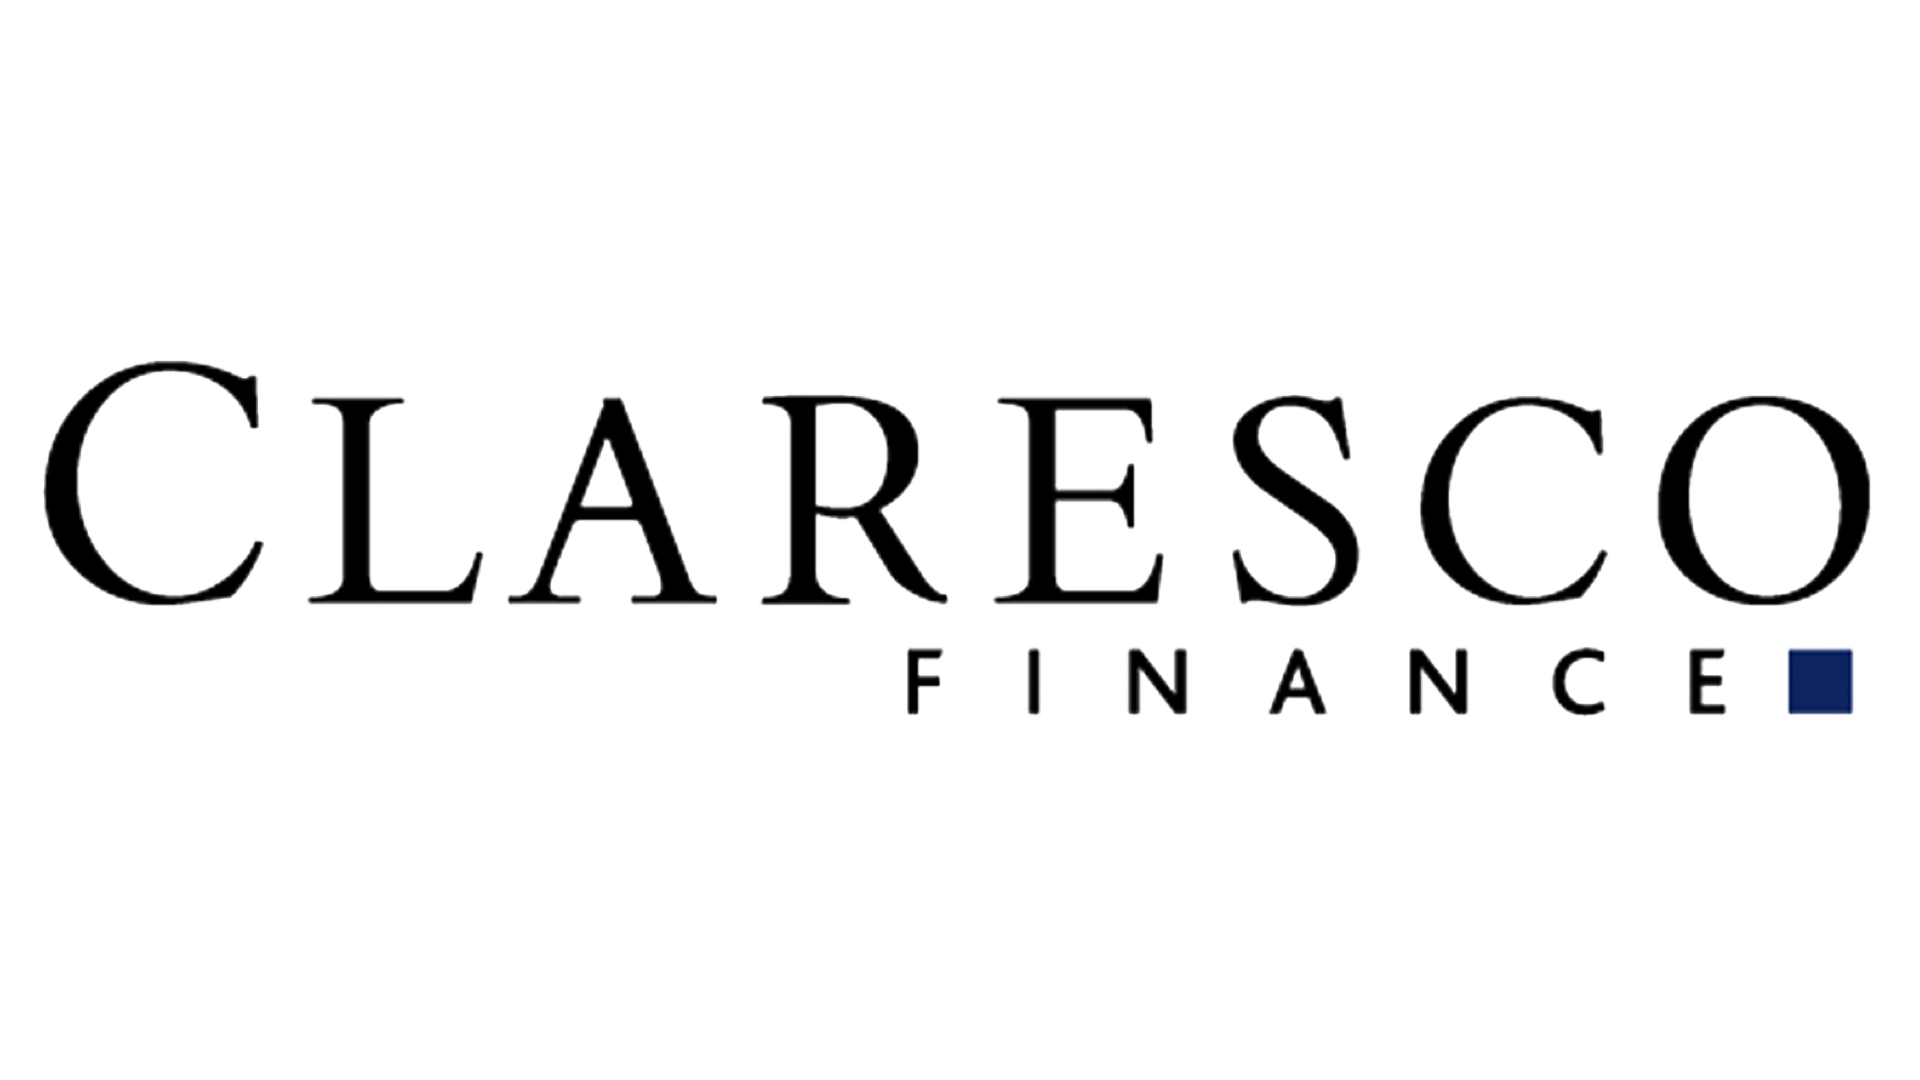 Claresco Finance